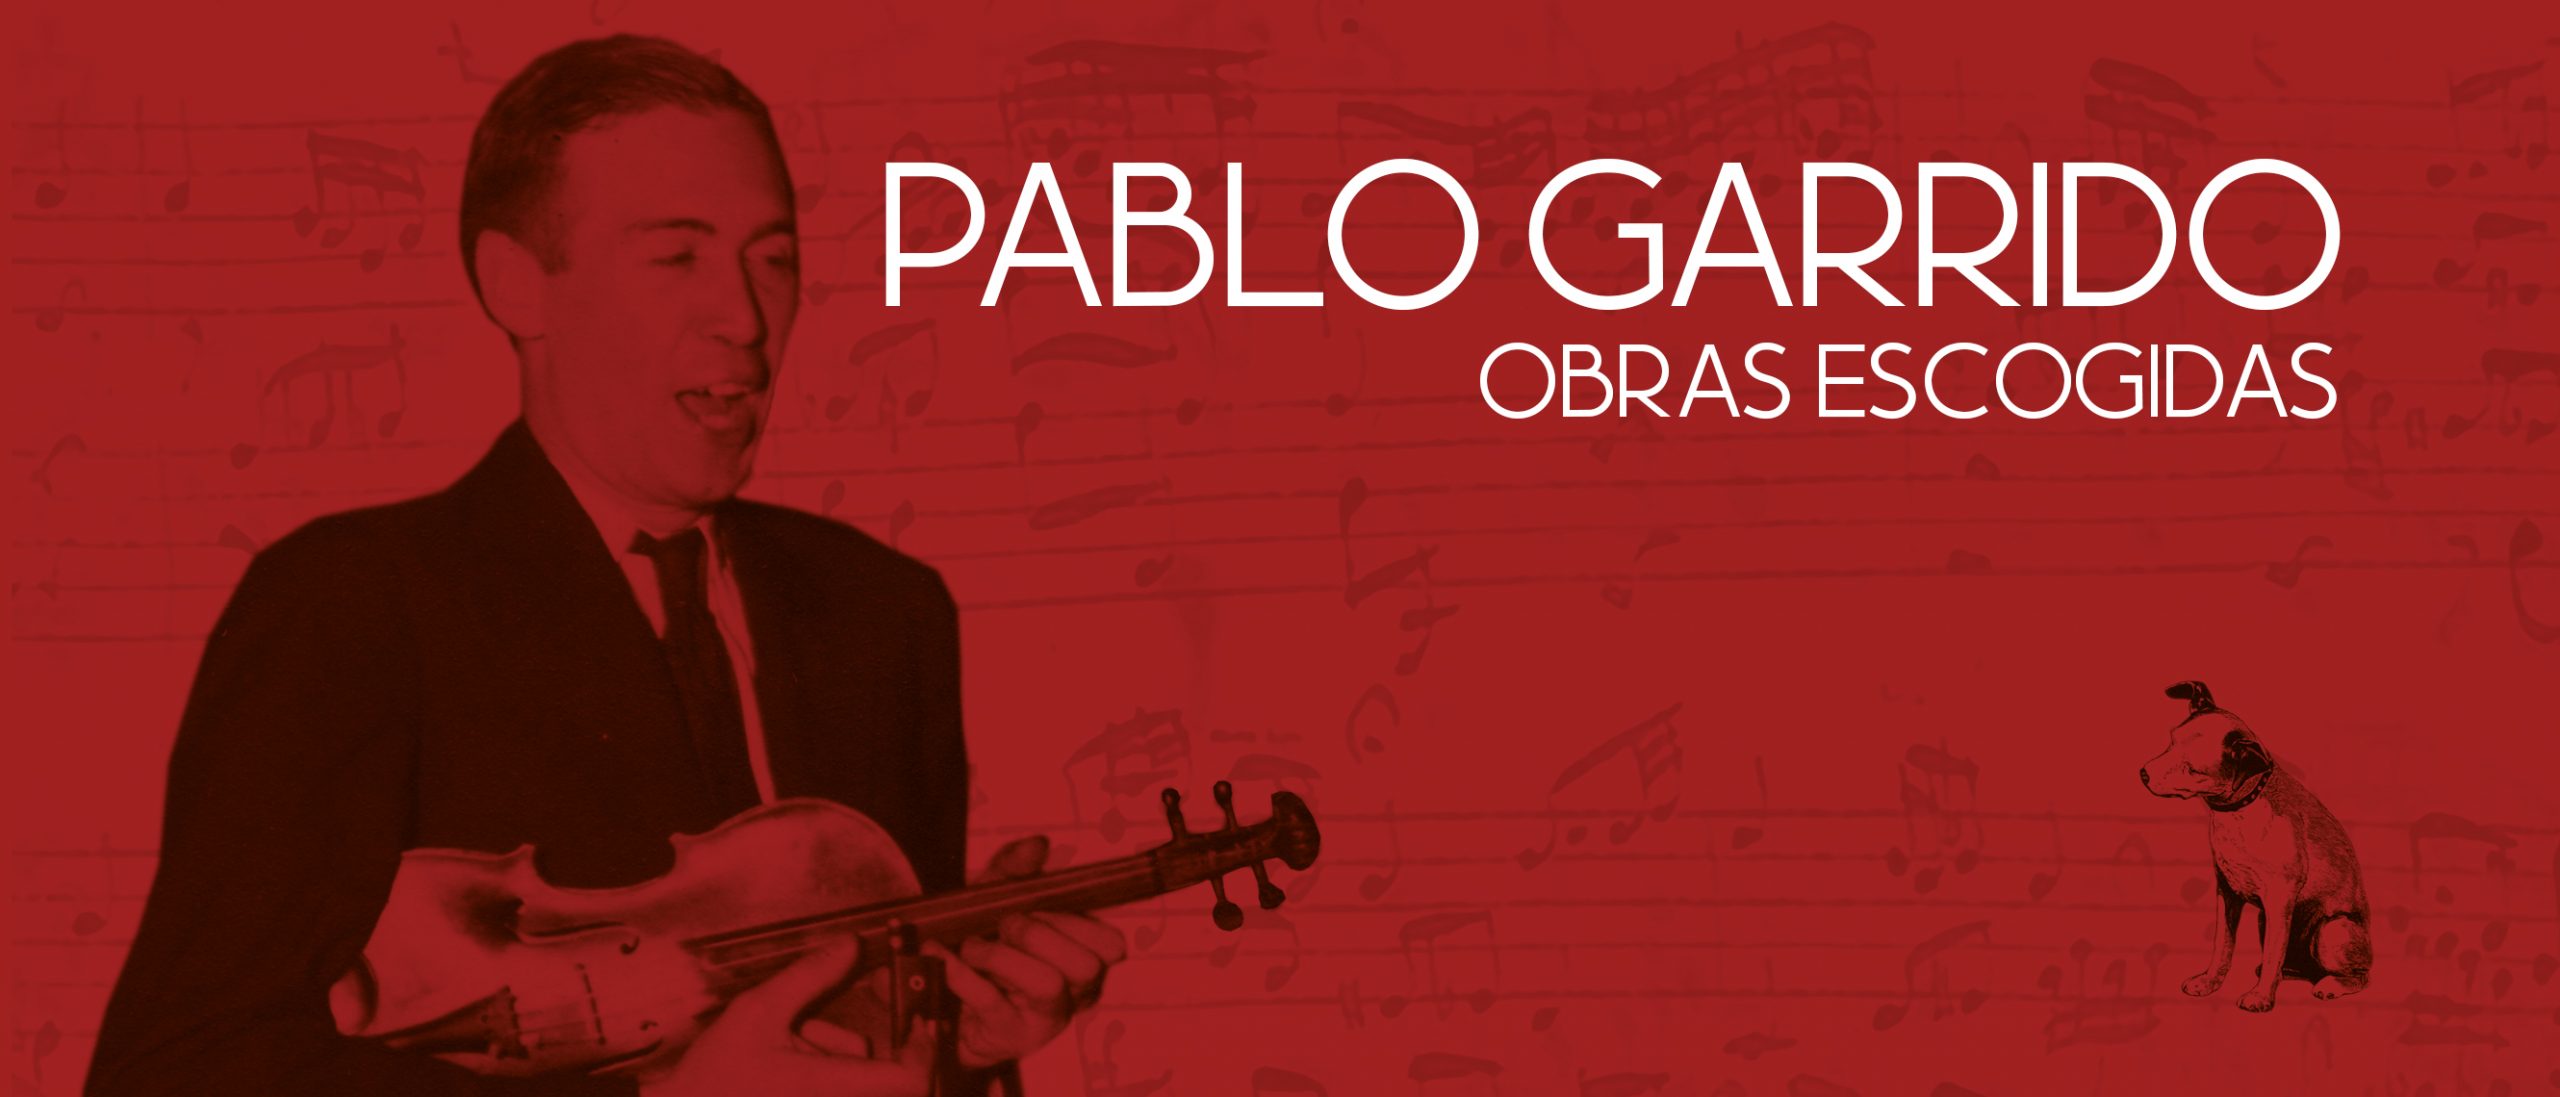 Está disponible el disco Obras Escogidas de Pablo Garrido